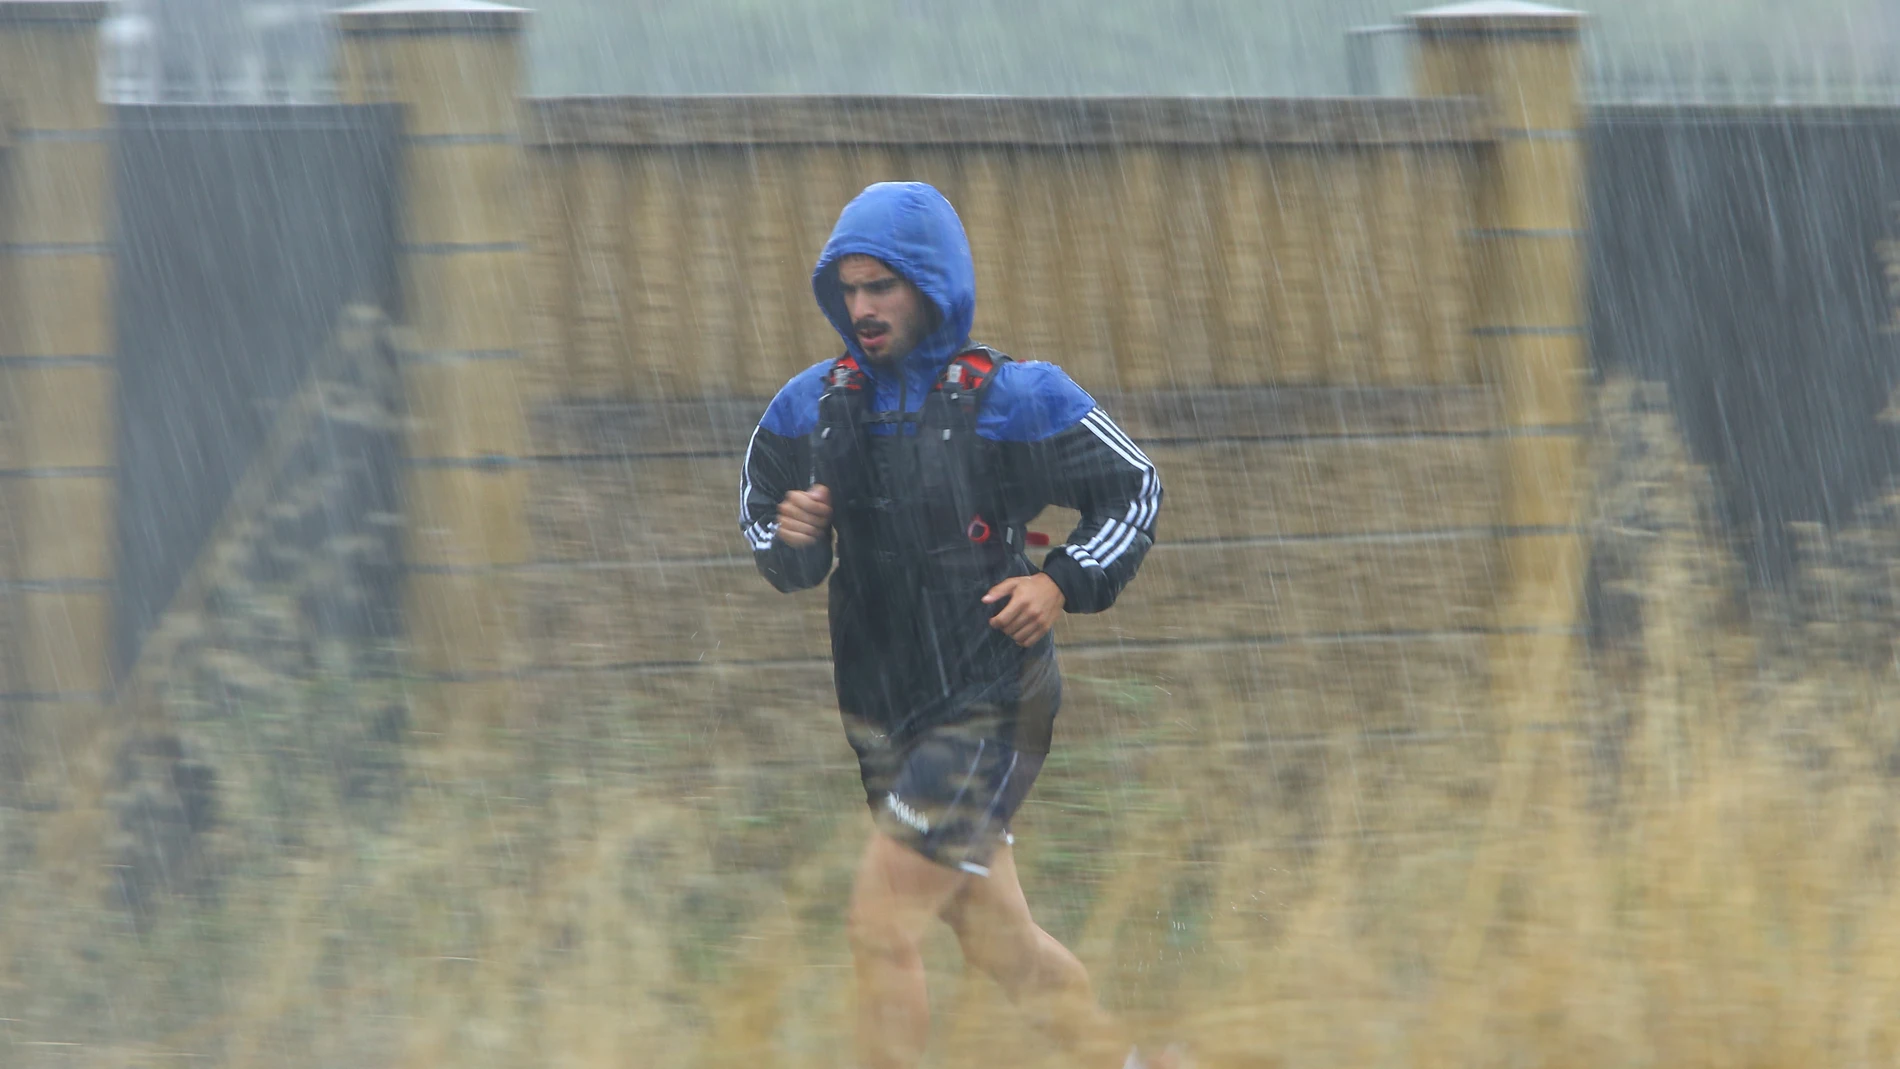 Un deportista corre bajo una intensa tormenta